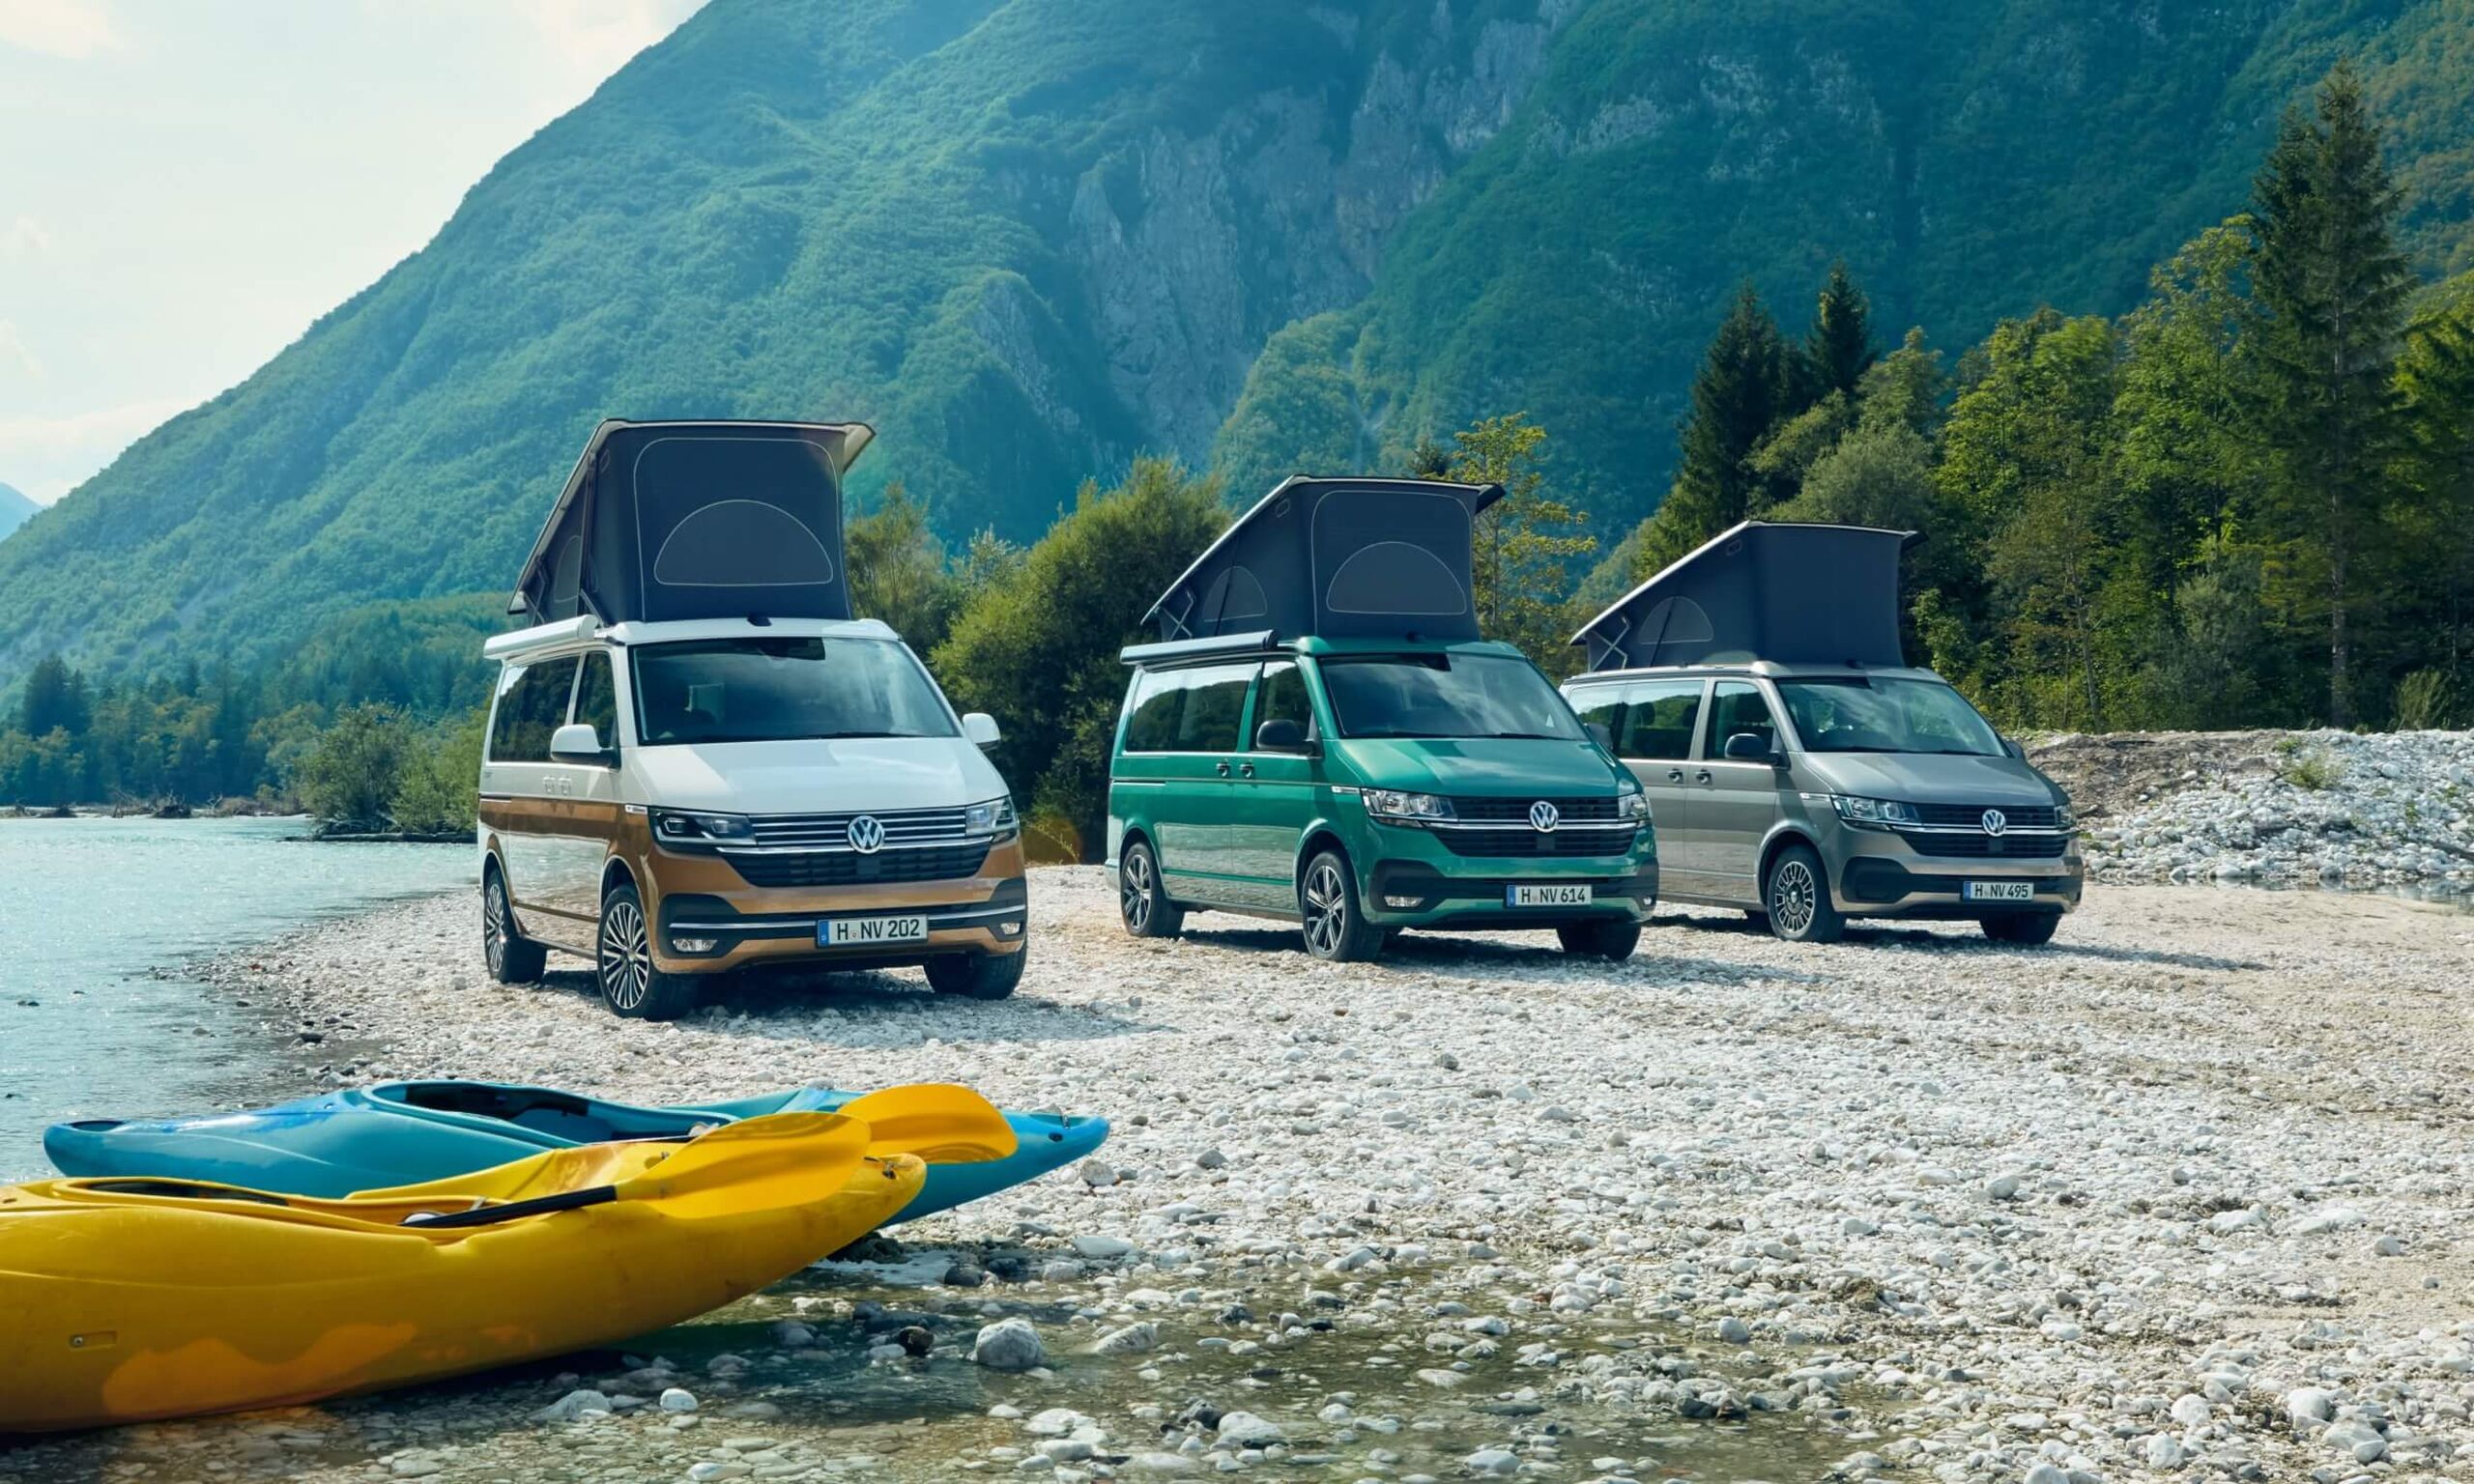 Três autocaravanas VW Californias 6.1 estacionadas num cenário de montanha ao pé de um lago.